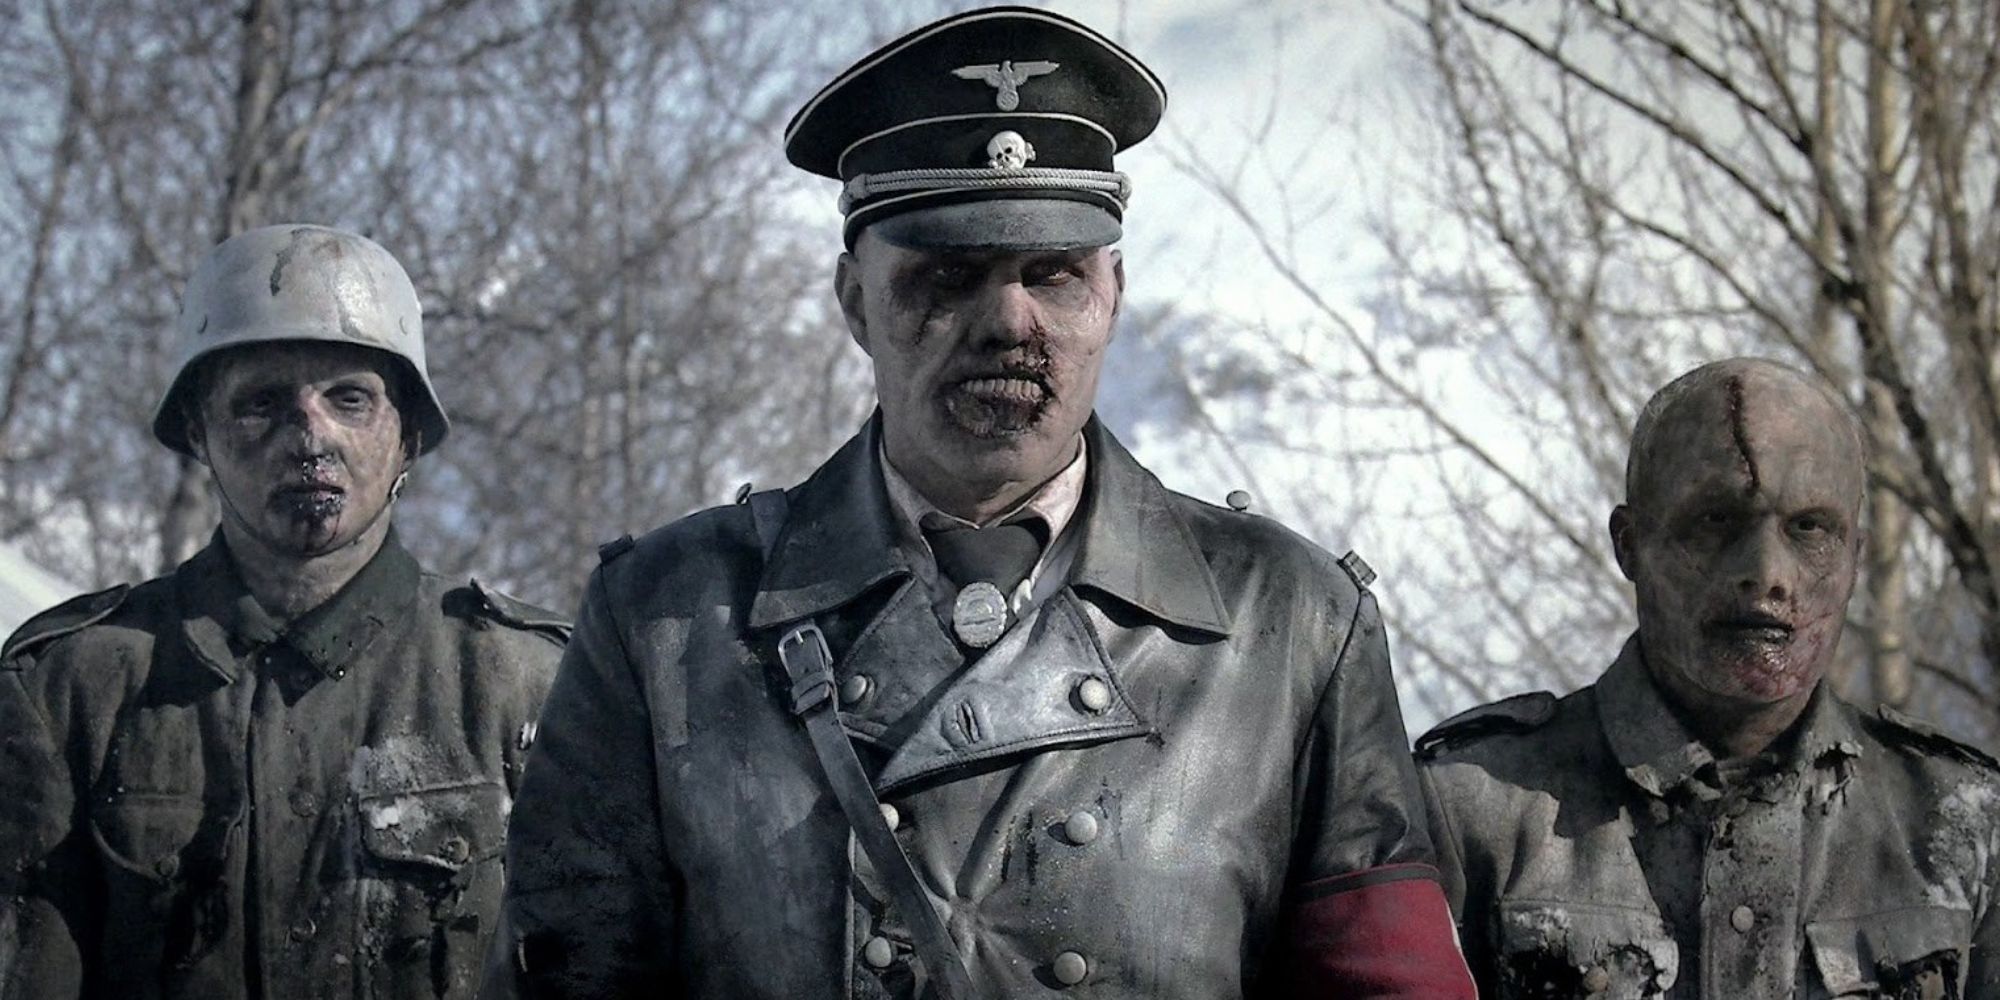 Zombie Nazis in 'Dead Snow'